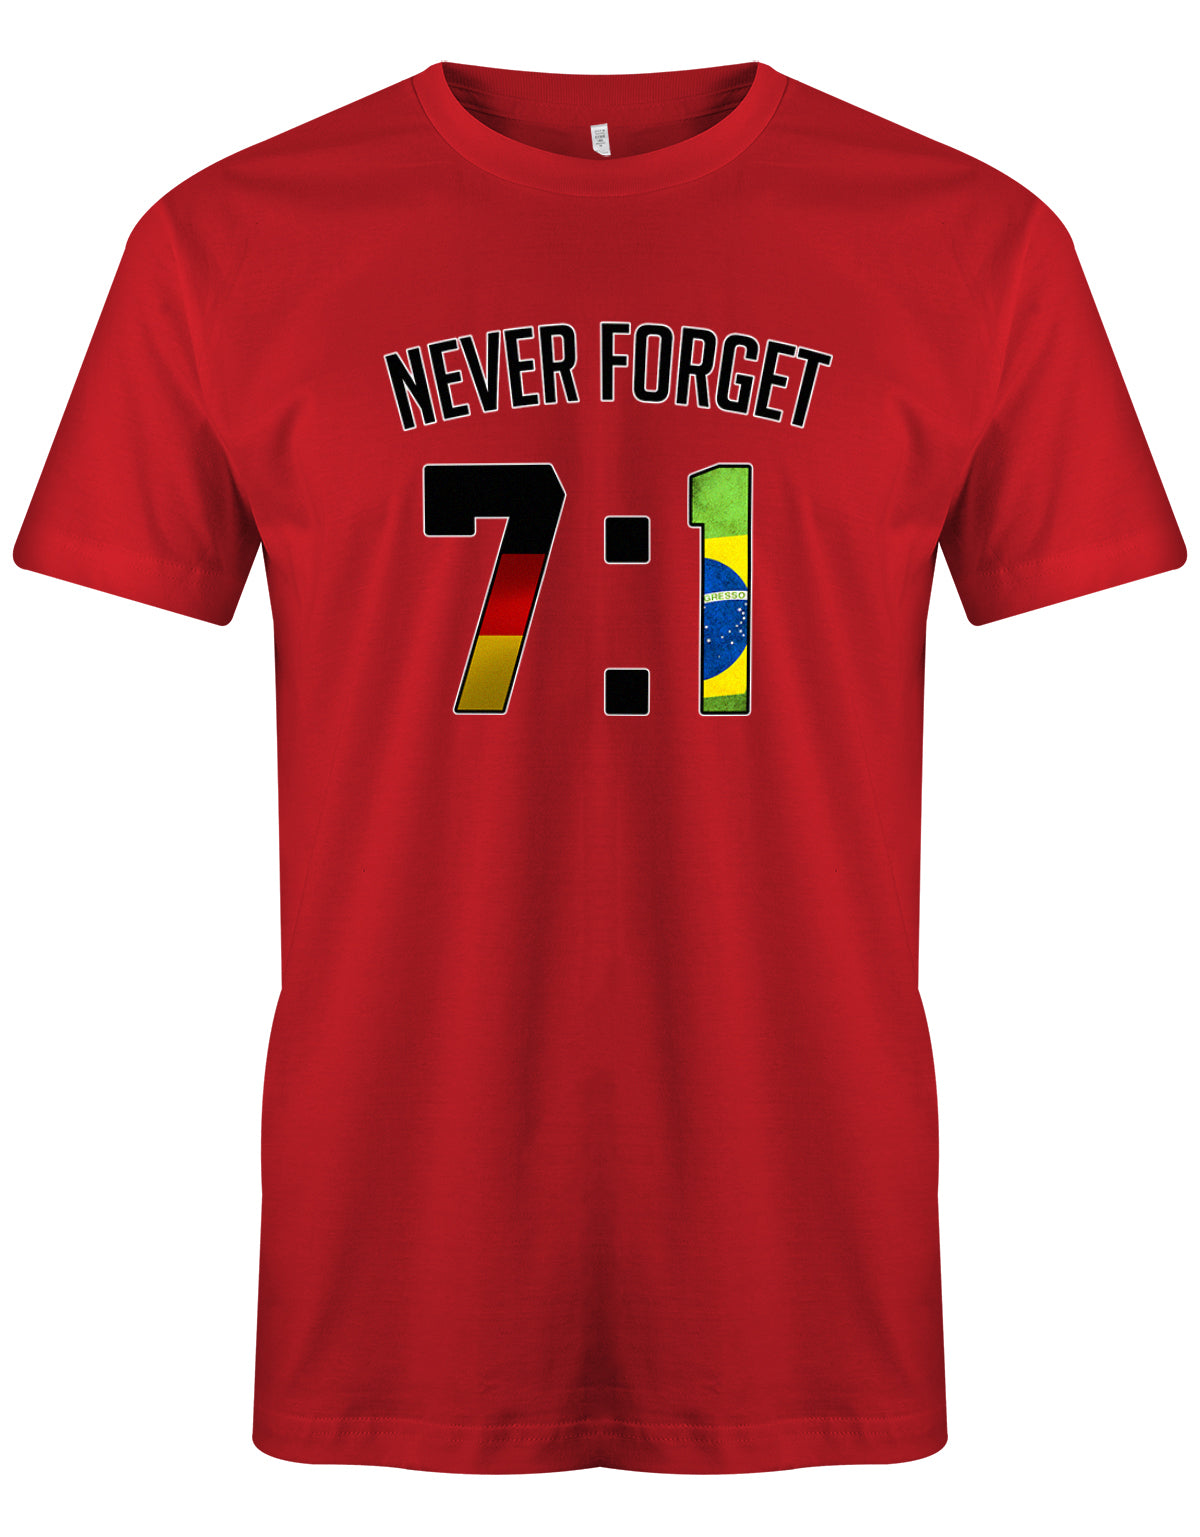 Deutschland Fan Shirt - WM - 7:1 - Never forget - Fan - Herren T-Shirt